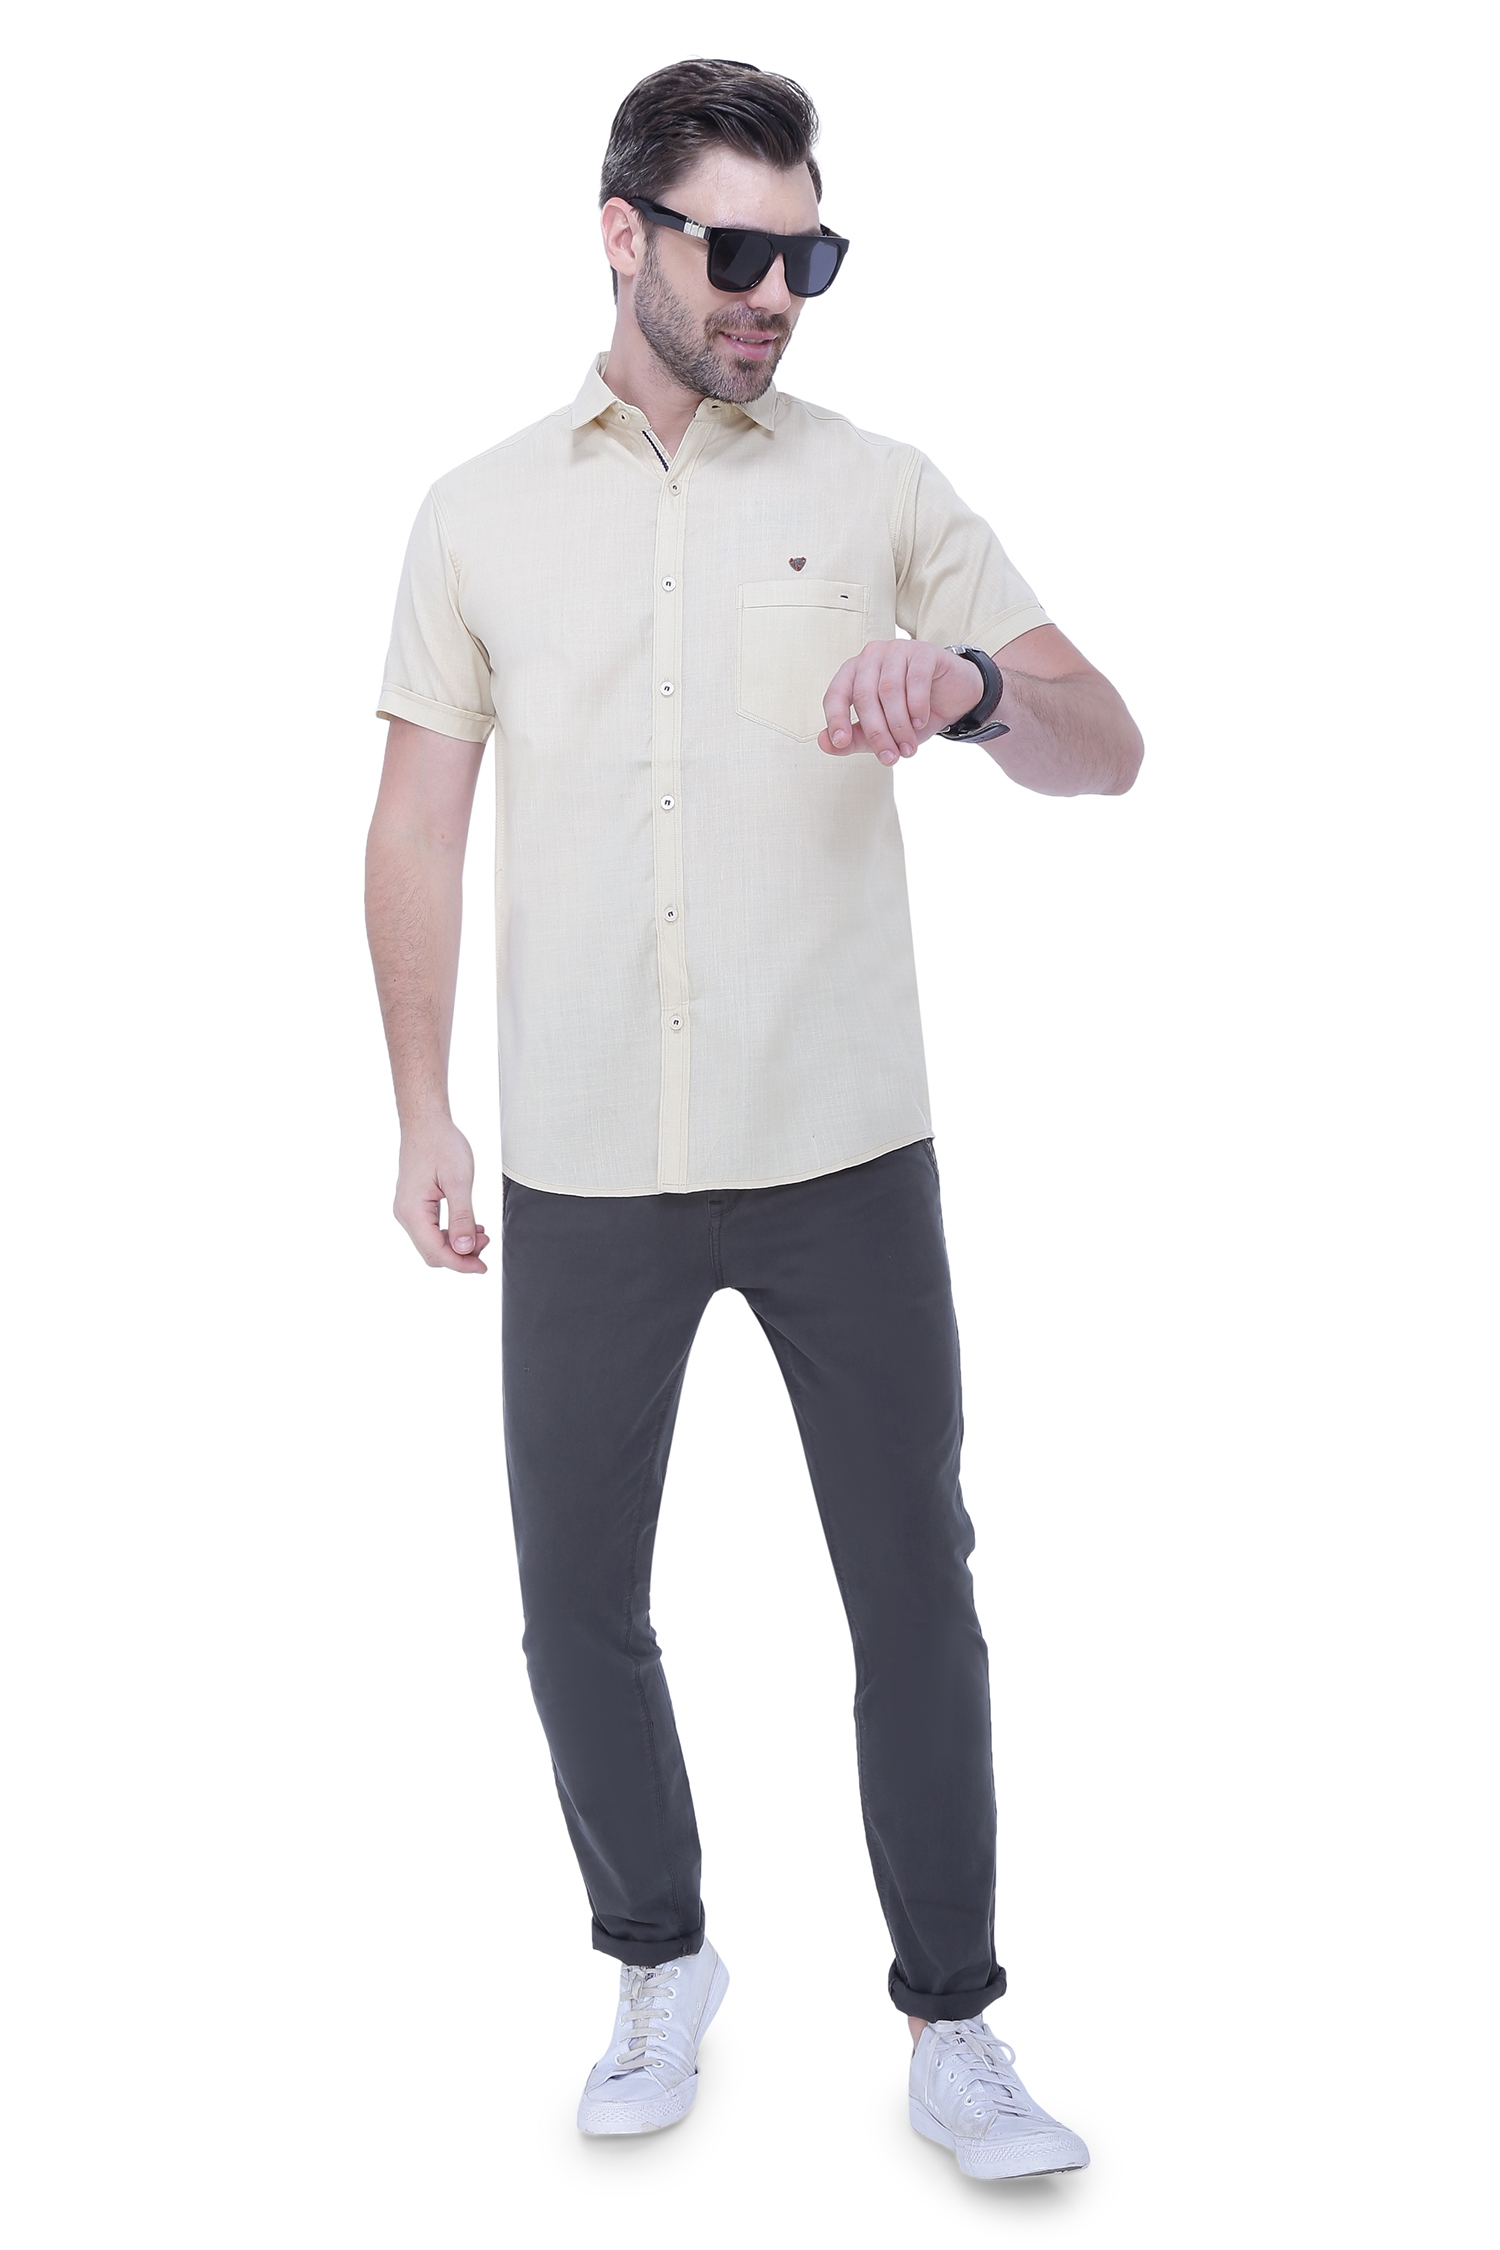 Kuons Avenue Men's Linen Blend Half Sleeves Casual Shirt-KACLHS1223